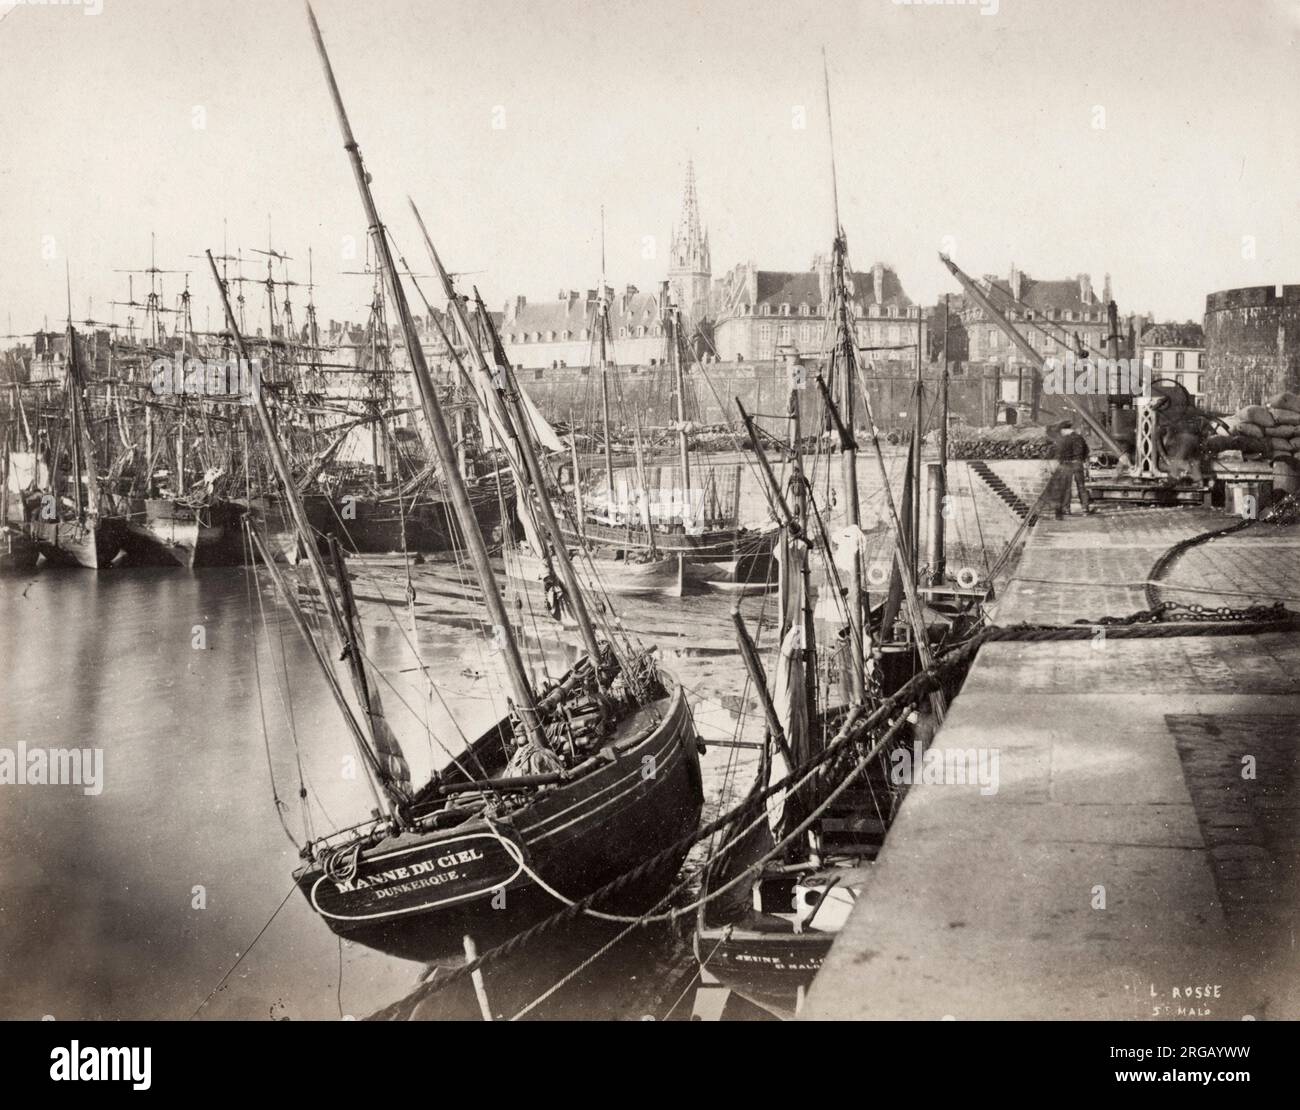 Vintage Foto aus dem 19. Jahrhundert - Blick auf den Hafen von St. Malo, Frankreich. Schiffe sind entlang des Docks gefesselt. Stockfoto